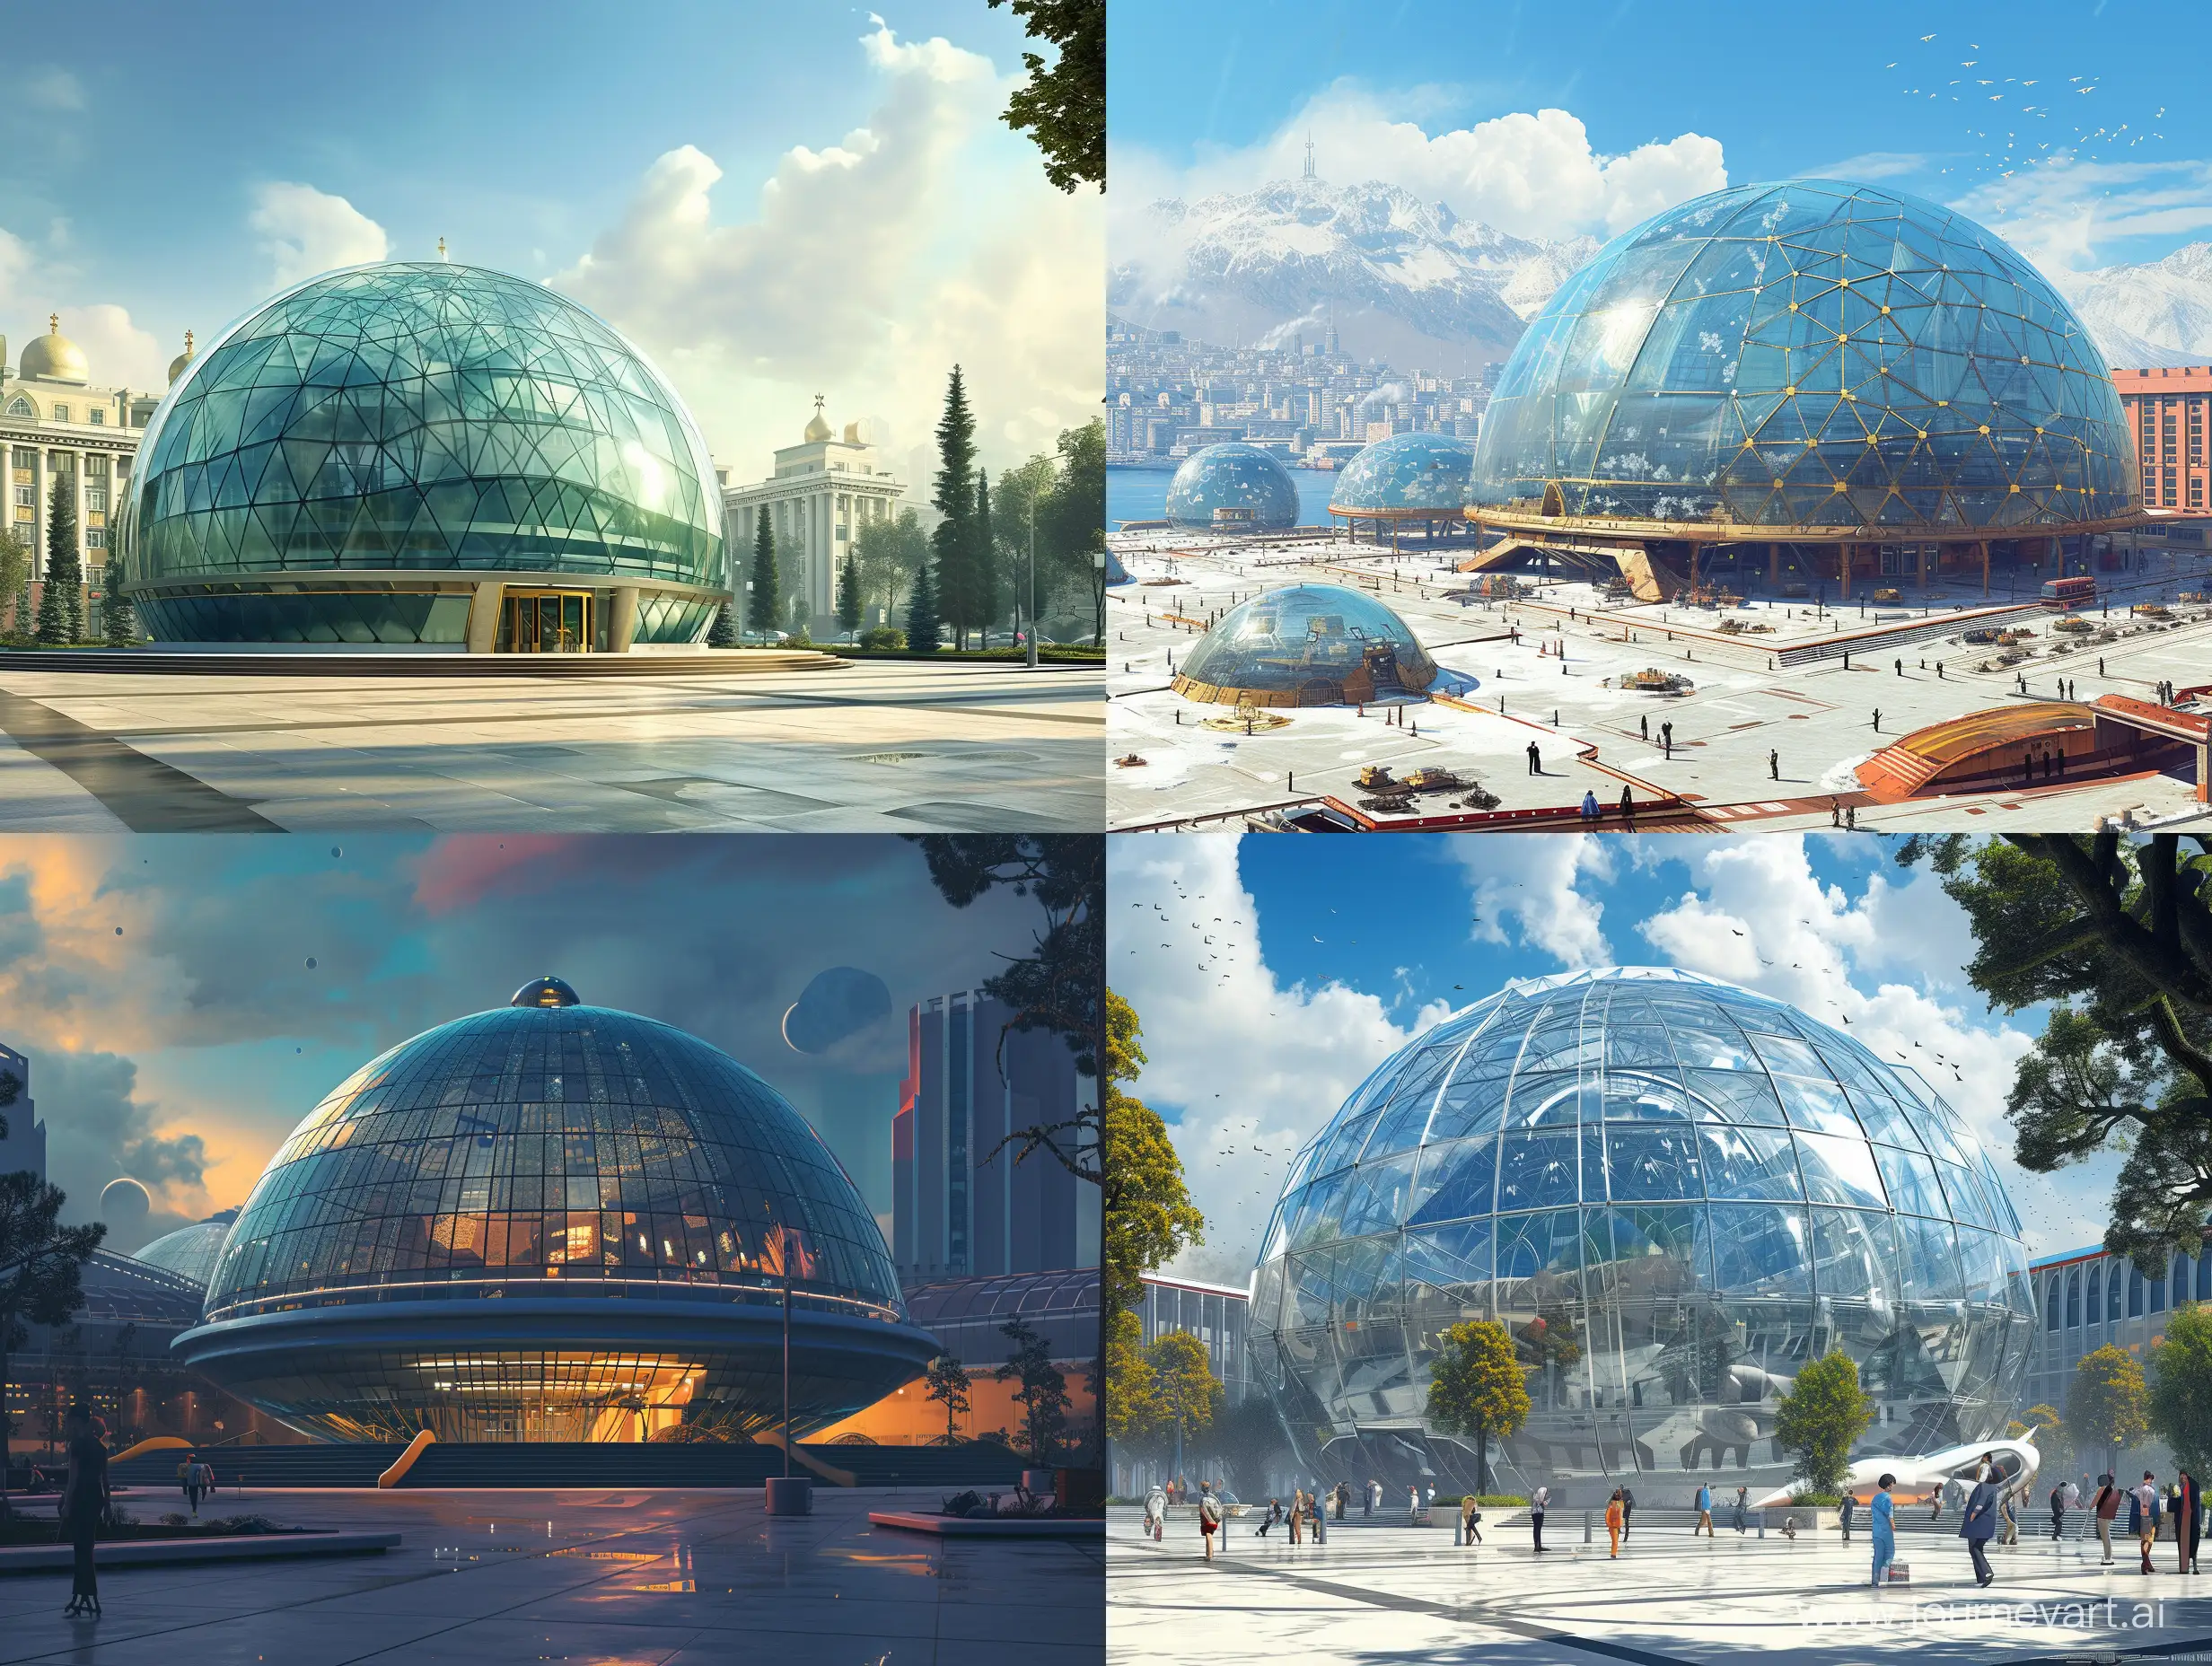 Retro-Futuristic-Glass-Dome-Building-in-Cold-War-Era-City-Concept-Art